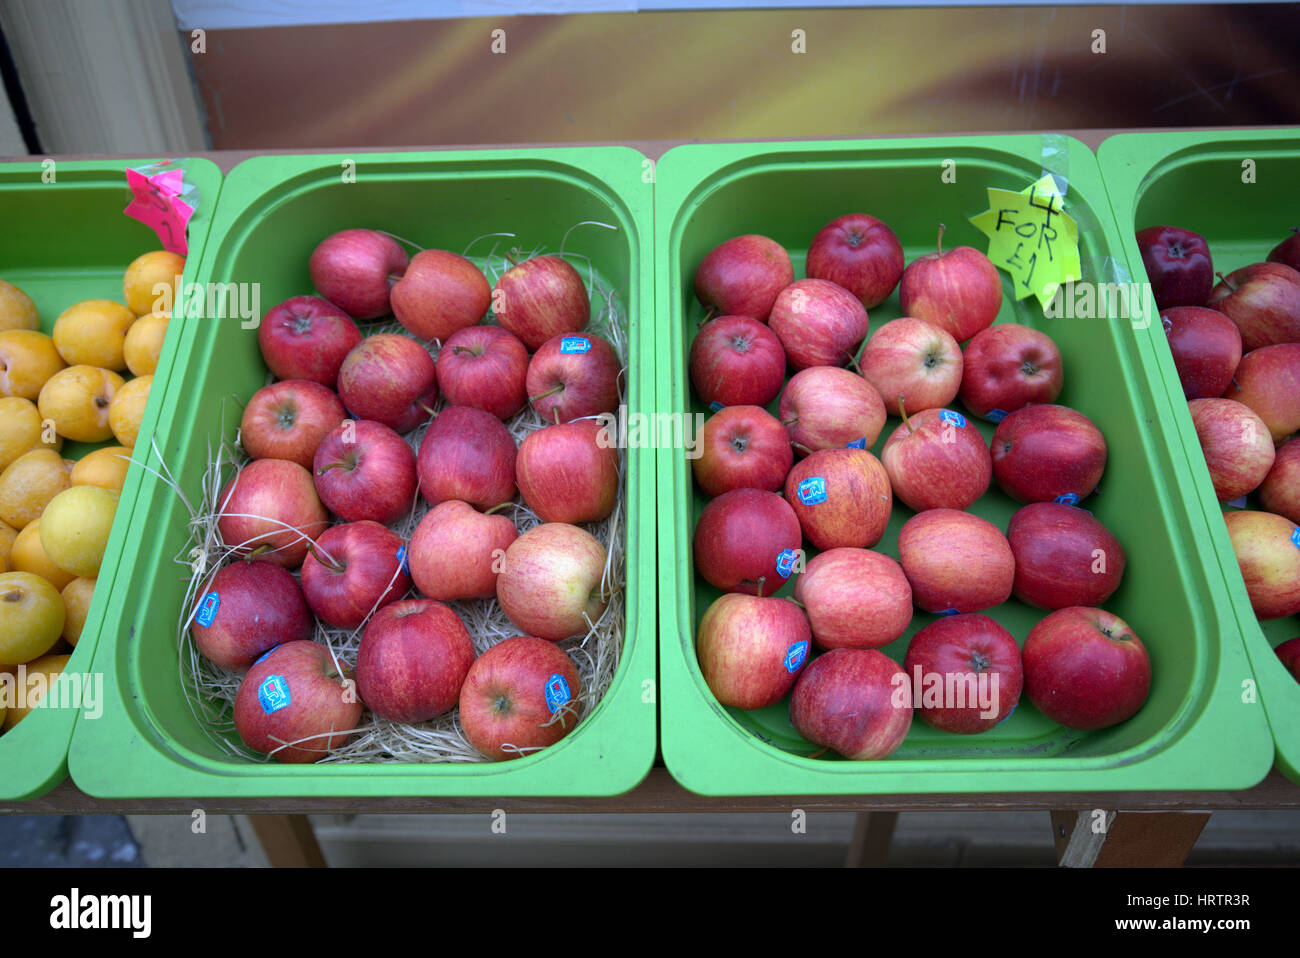 Stand de fruits et légumes pommes rouges Banque D'Images